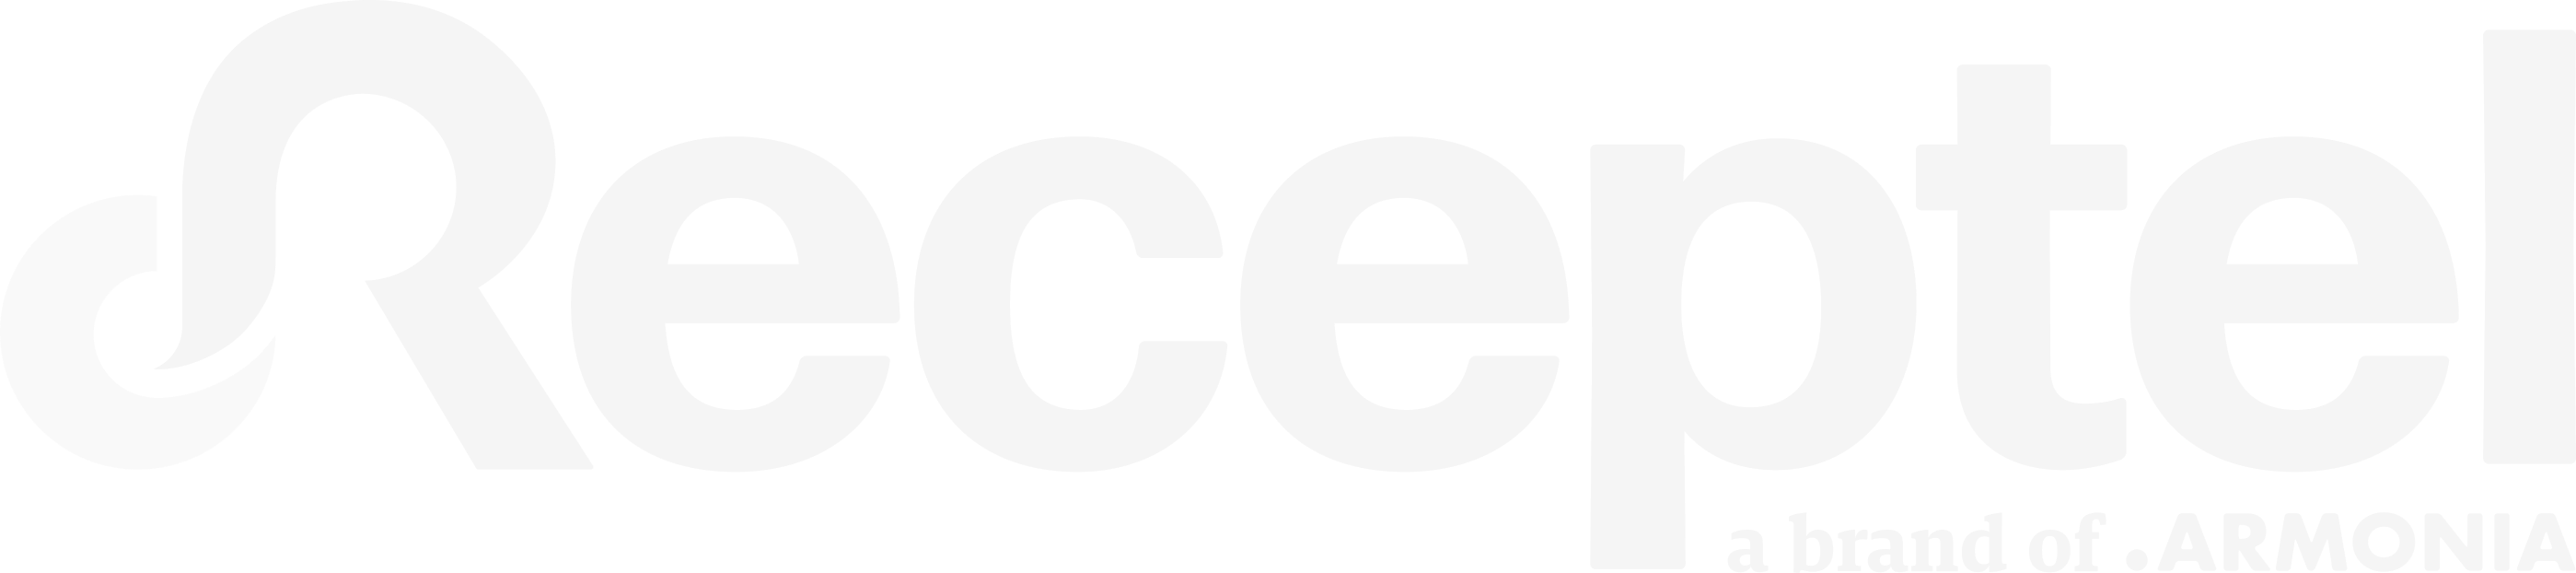 Receptel logo